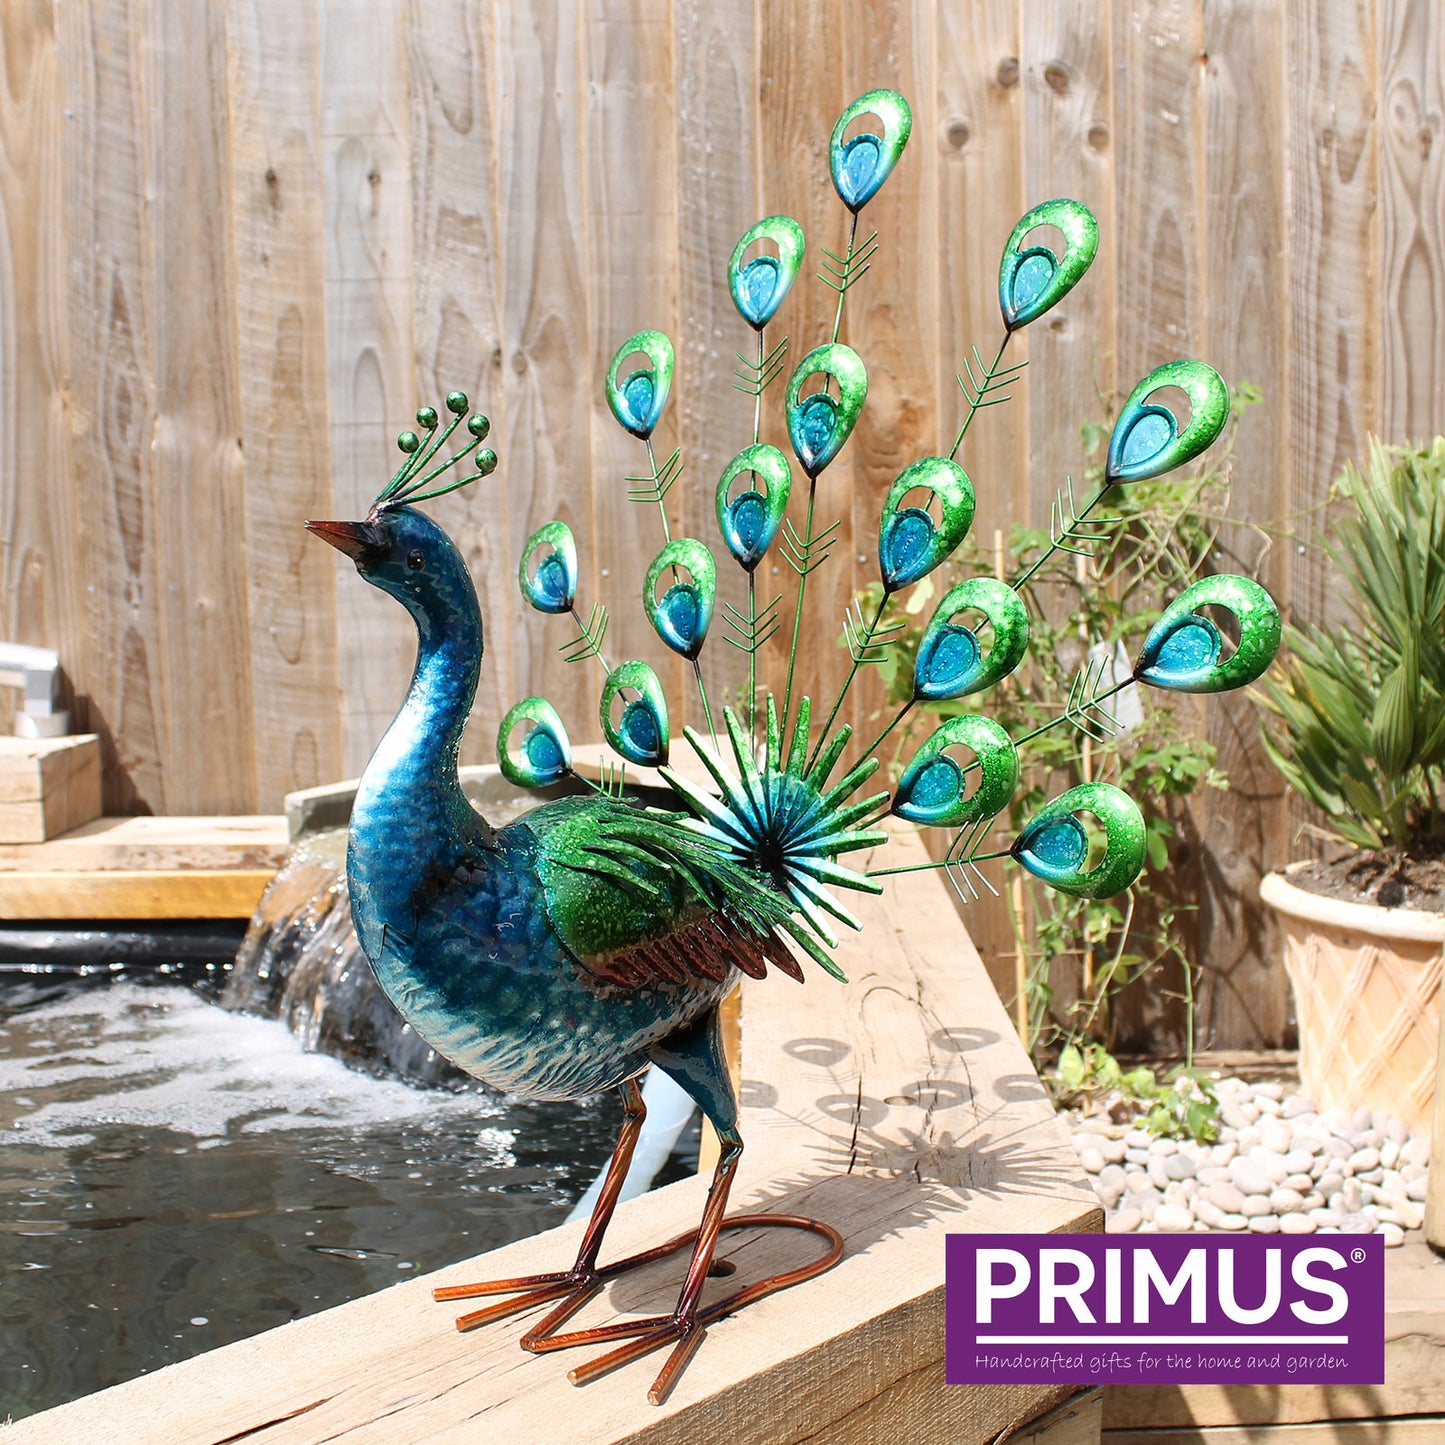 Primus Vibrant Fantail Peacock 42cm x 55cm